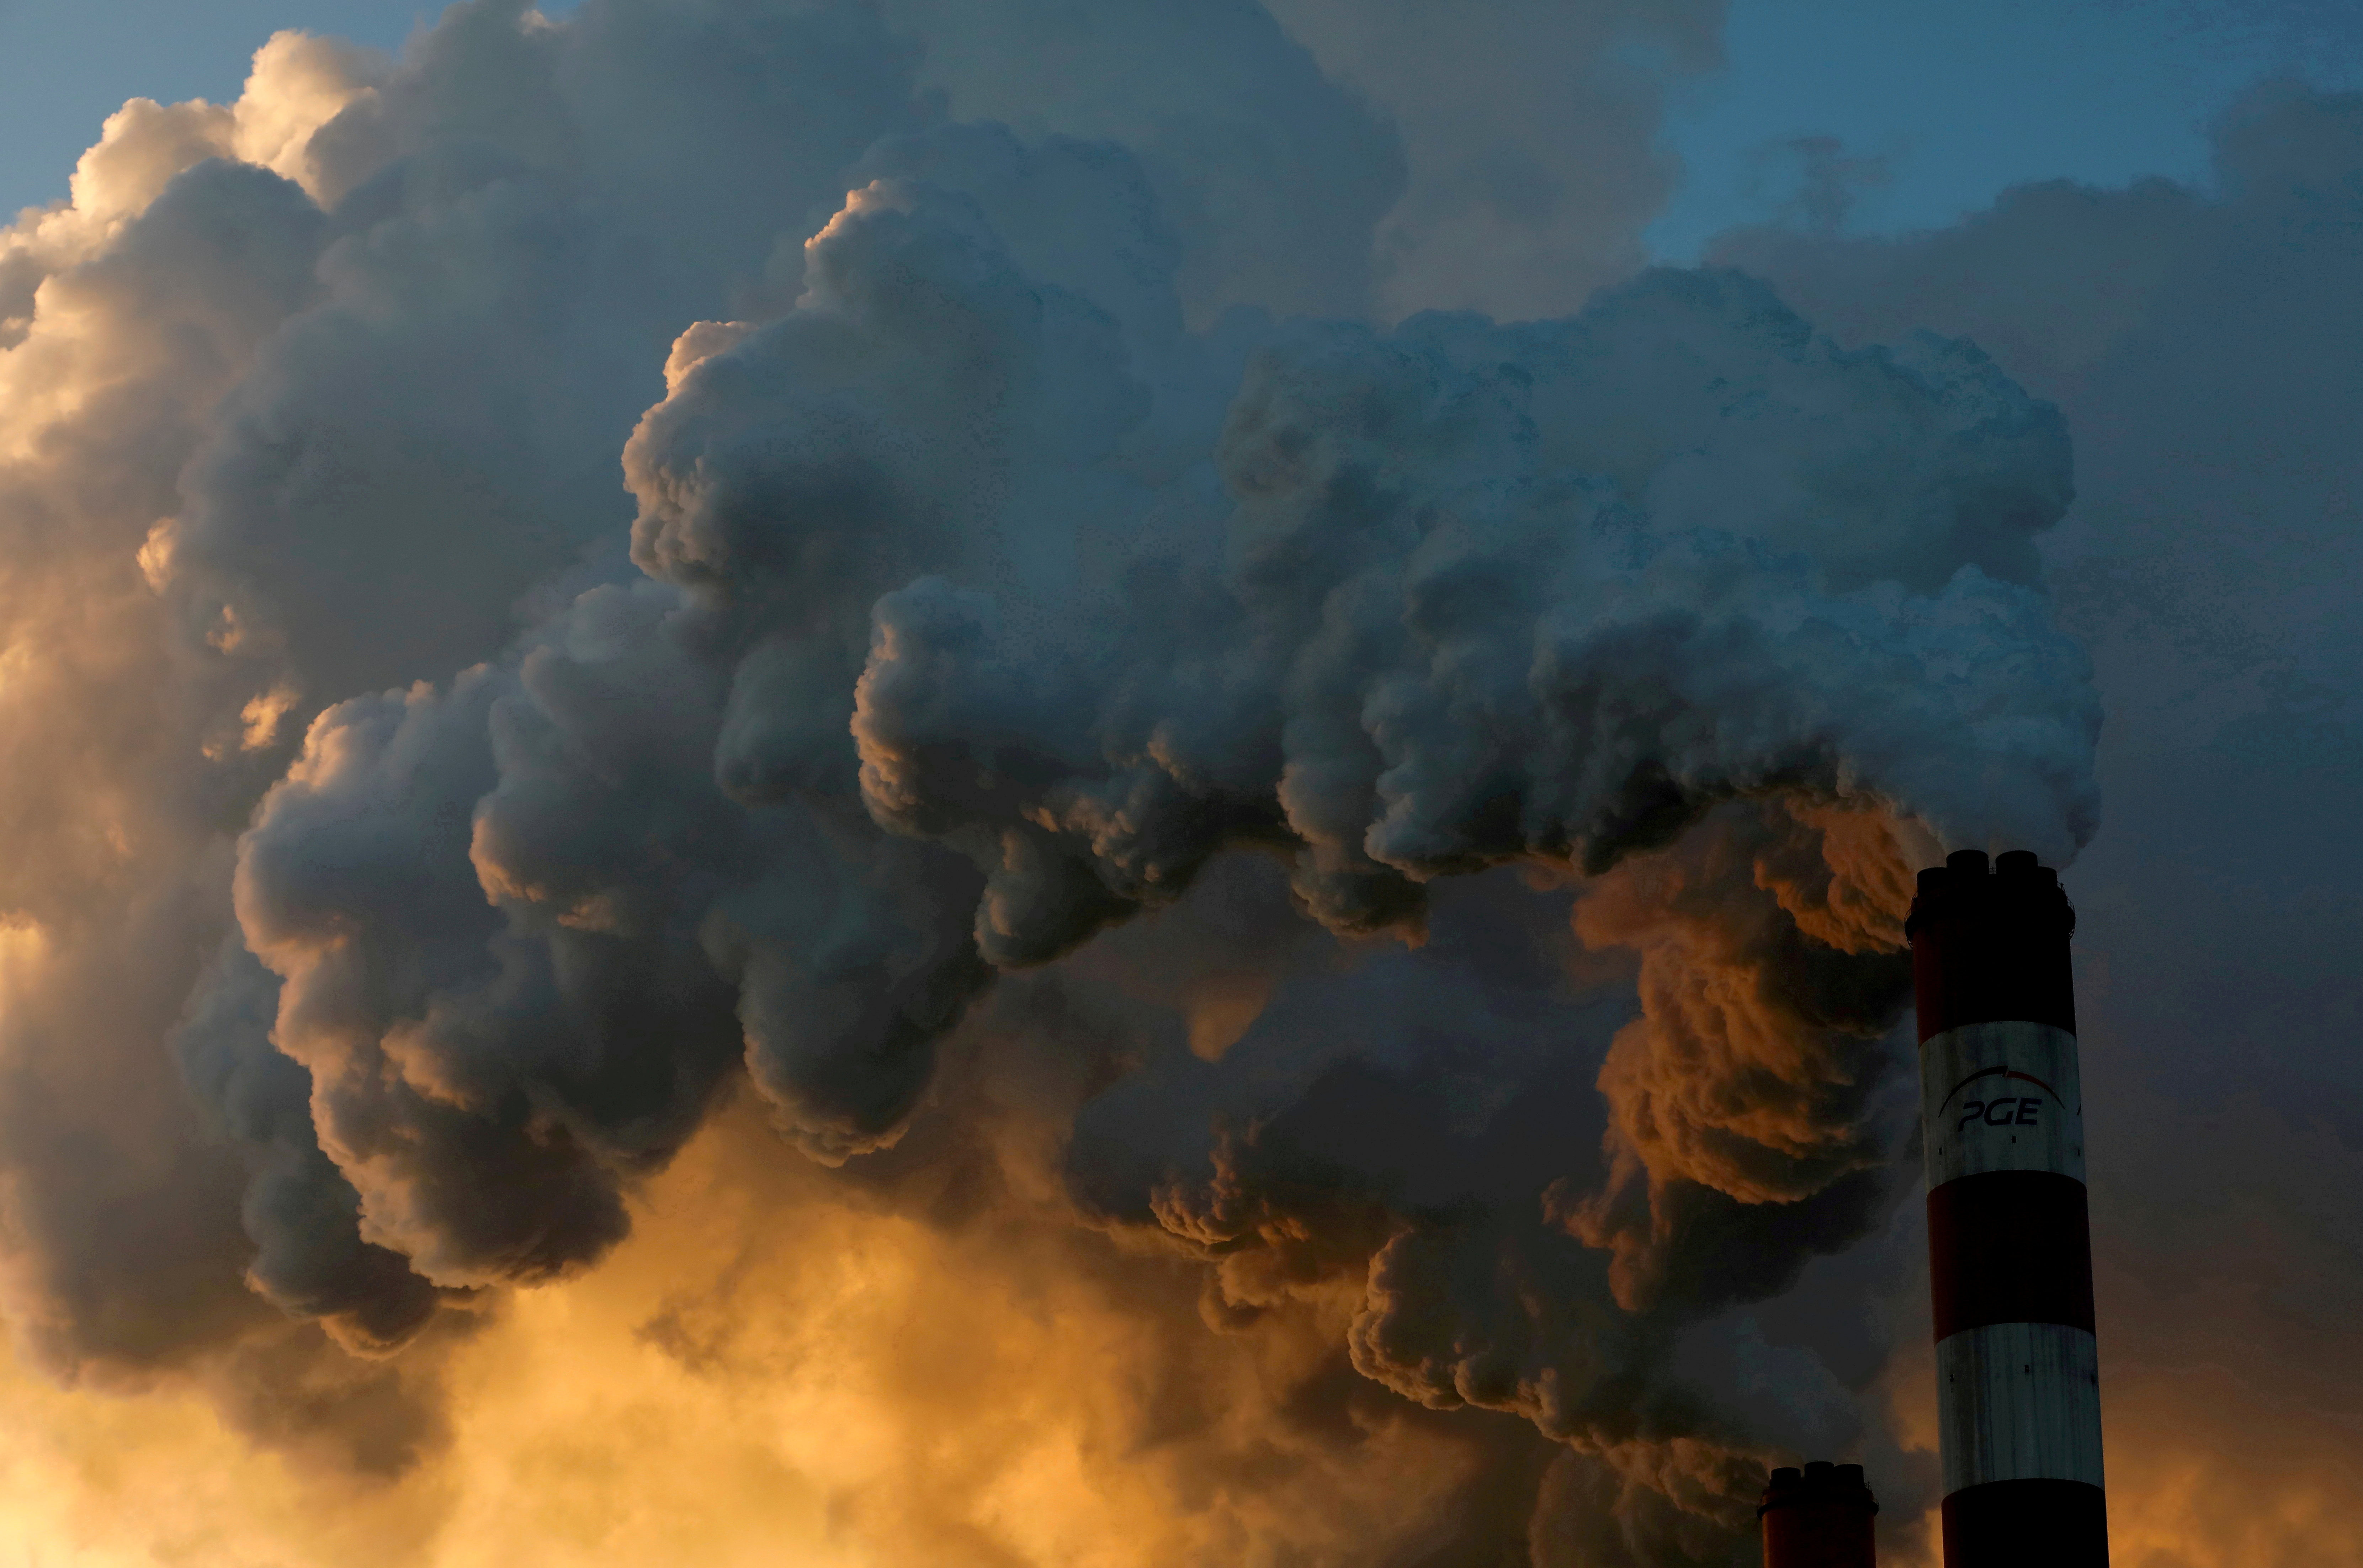 Fumaça e vapor emanam da Central Elétrica de Belgado, a maior usina de carvão da Europa perto de Belgado, Polônia.  Foto tirada em 28 de novembro de 2018.  REUTERS / Kacper Pempel / Arquivo de fotos